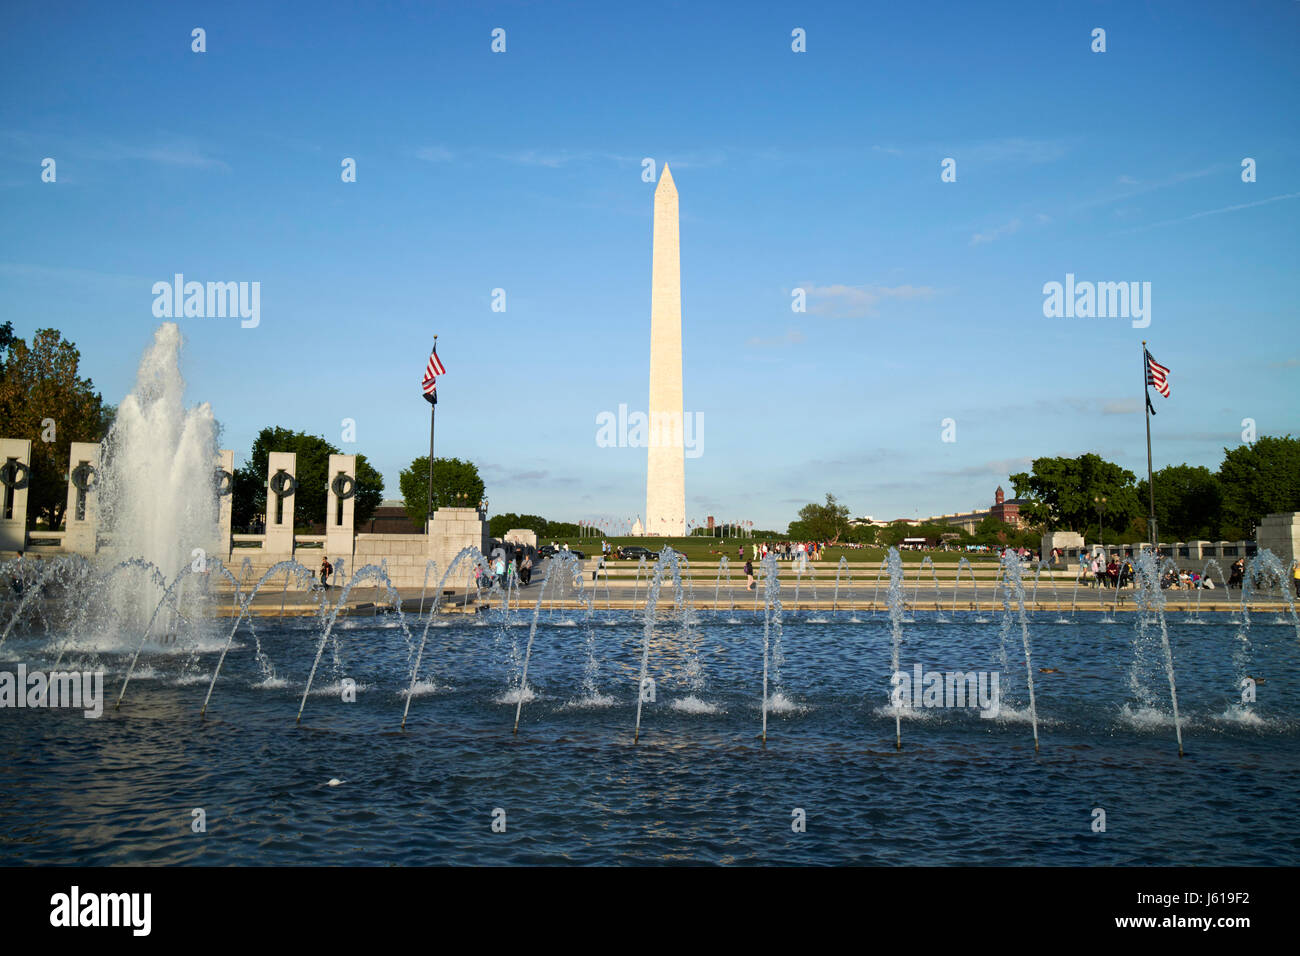 Piscine memorial et fontaines du national world war 2 memorial devant le Washington monument Washington DC USA Banque D'Images